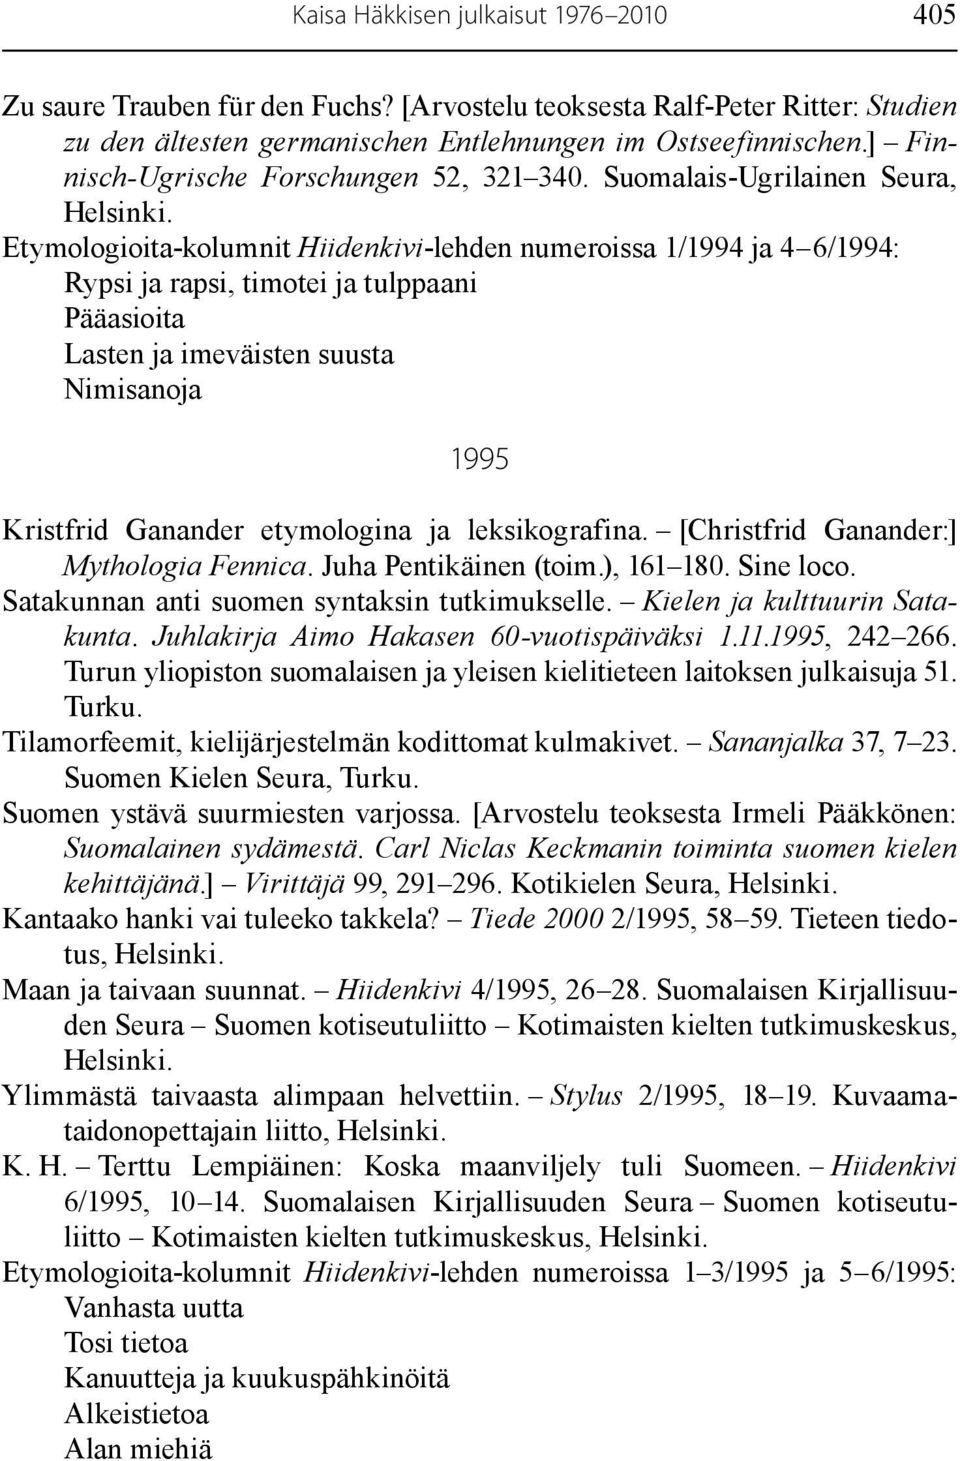 Suomalais-Ugrilainen Seura, Etymologioita-kolumnit Hiidenkivi-lehden numeroissa 1/1994 ja 4 6/1994: Rypsi ja rapsi, timotei ja tulppaani Pääasioita Lasten ja imeväisten suusta Nimisanoja 1995